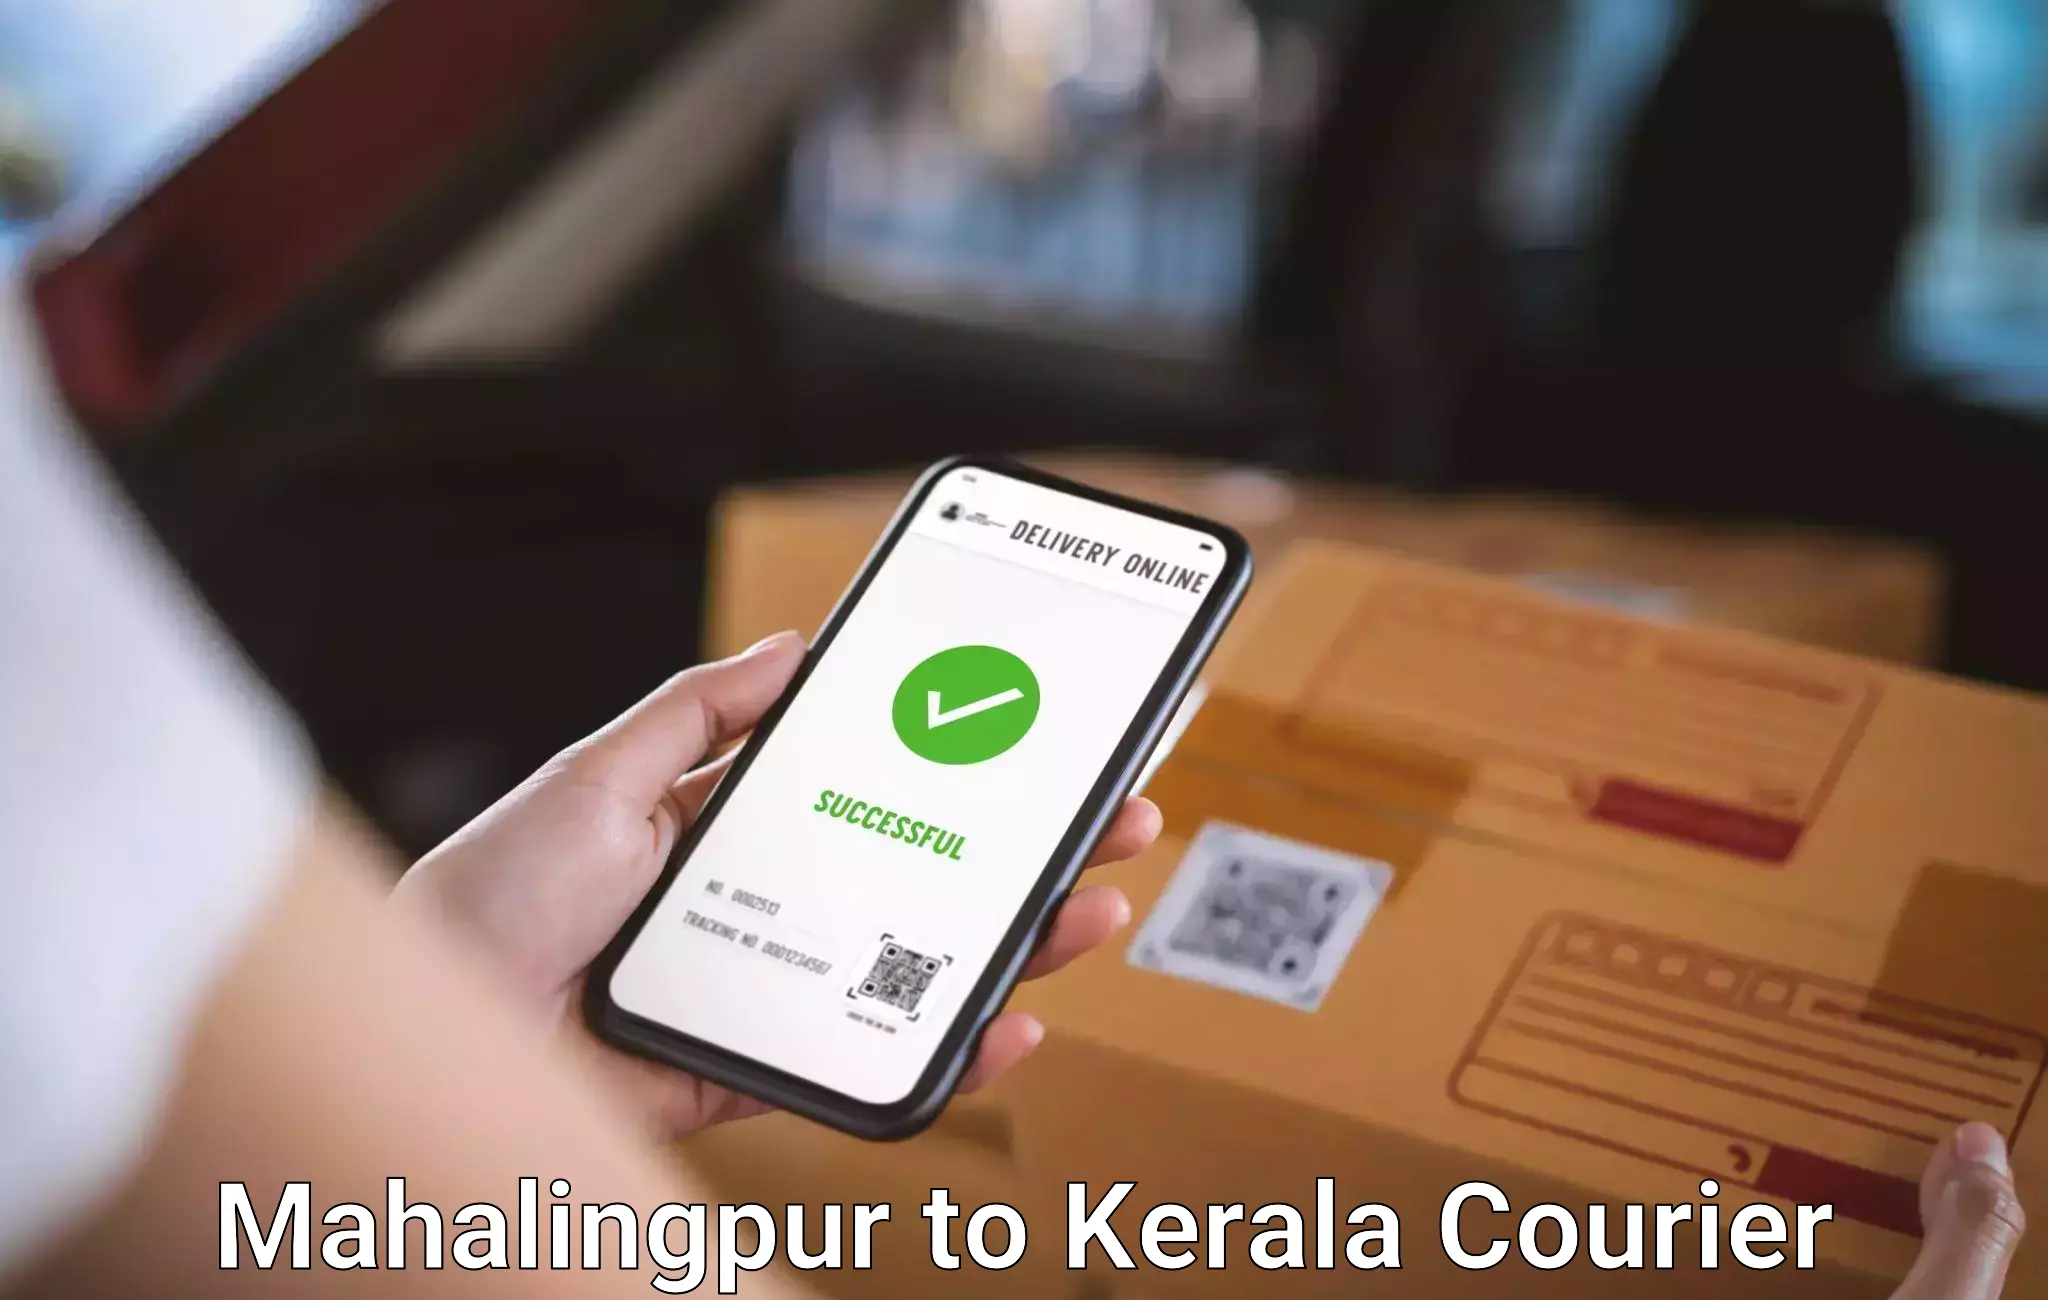 Baggage courier solutions Mahalingpur to Neyyattinkara